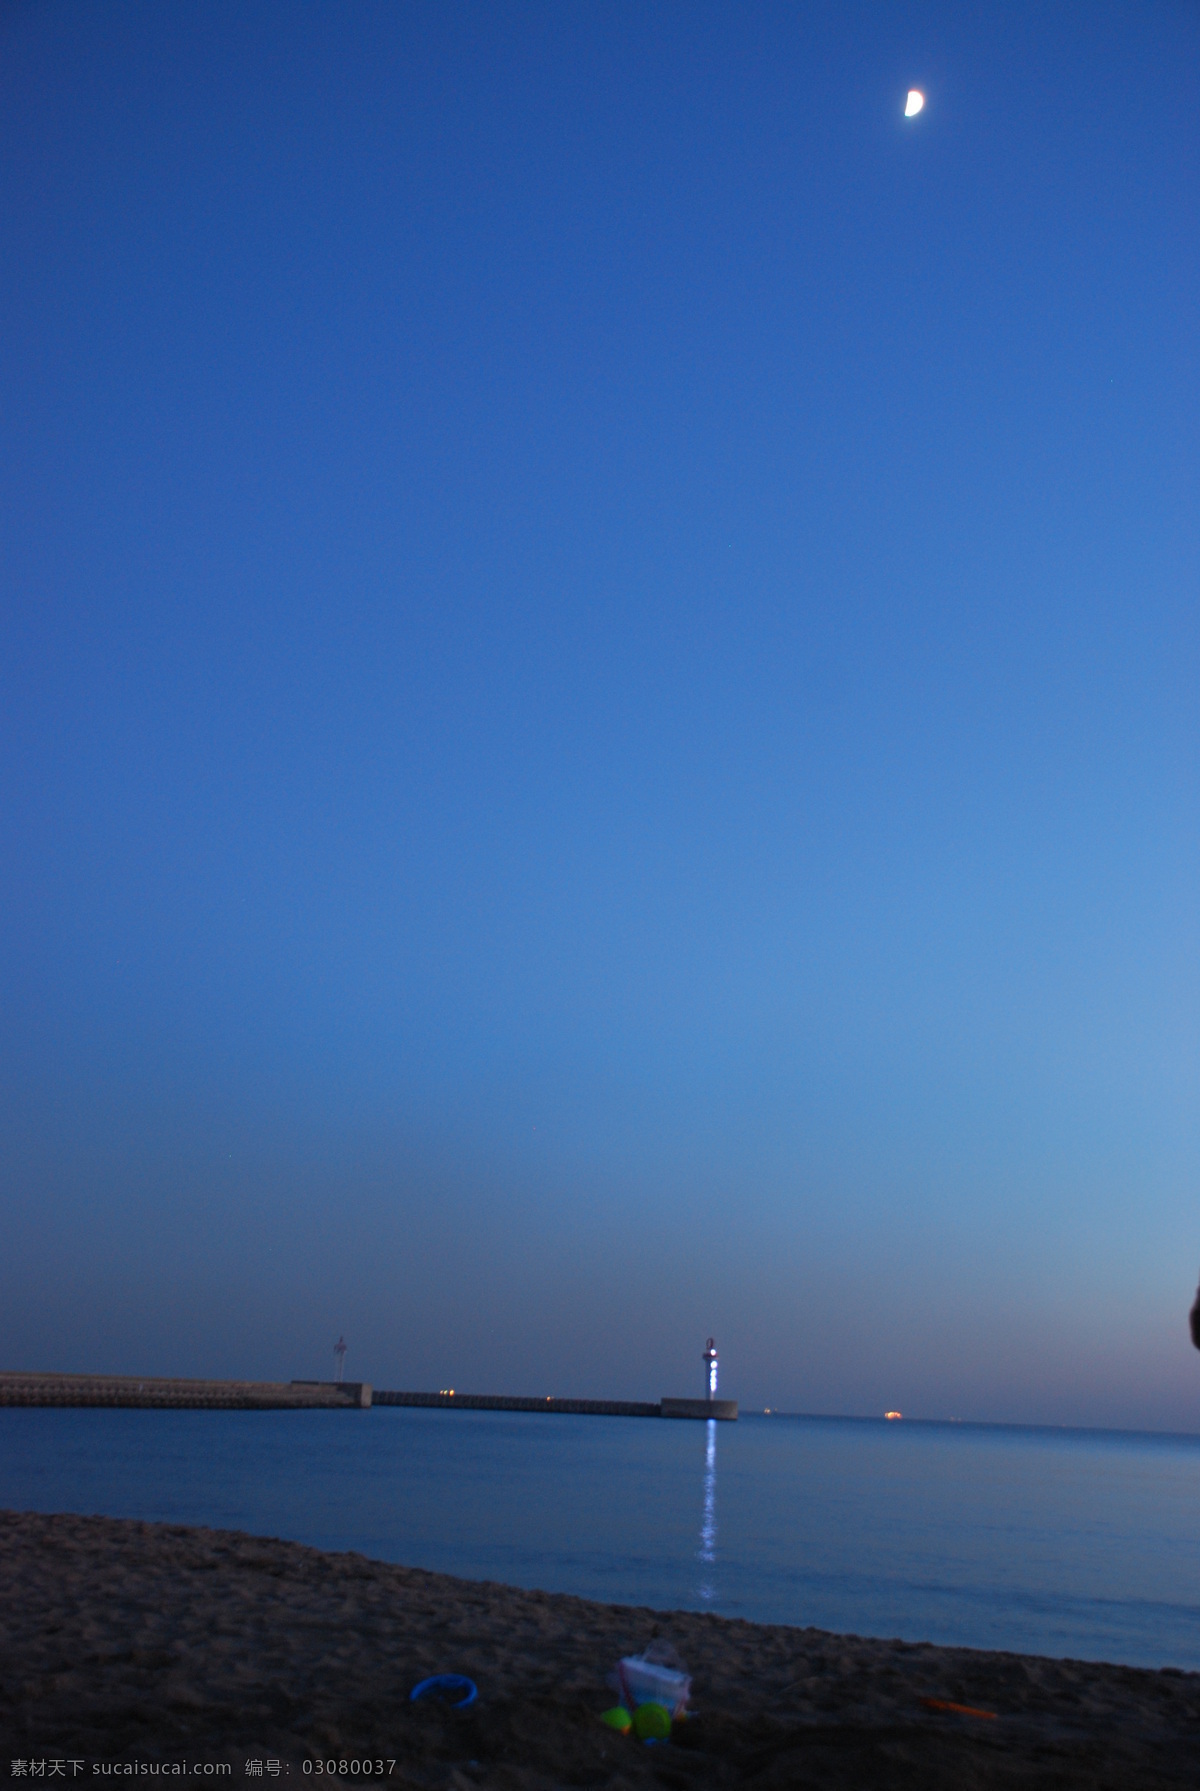 南戴河 夜晚 灯塔 海滩 海湾 黄昏 月亮 自然风景 自然景观 南戴河夜晚 psd源文件